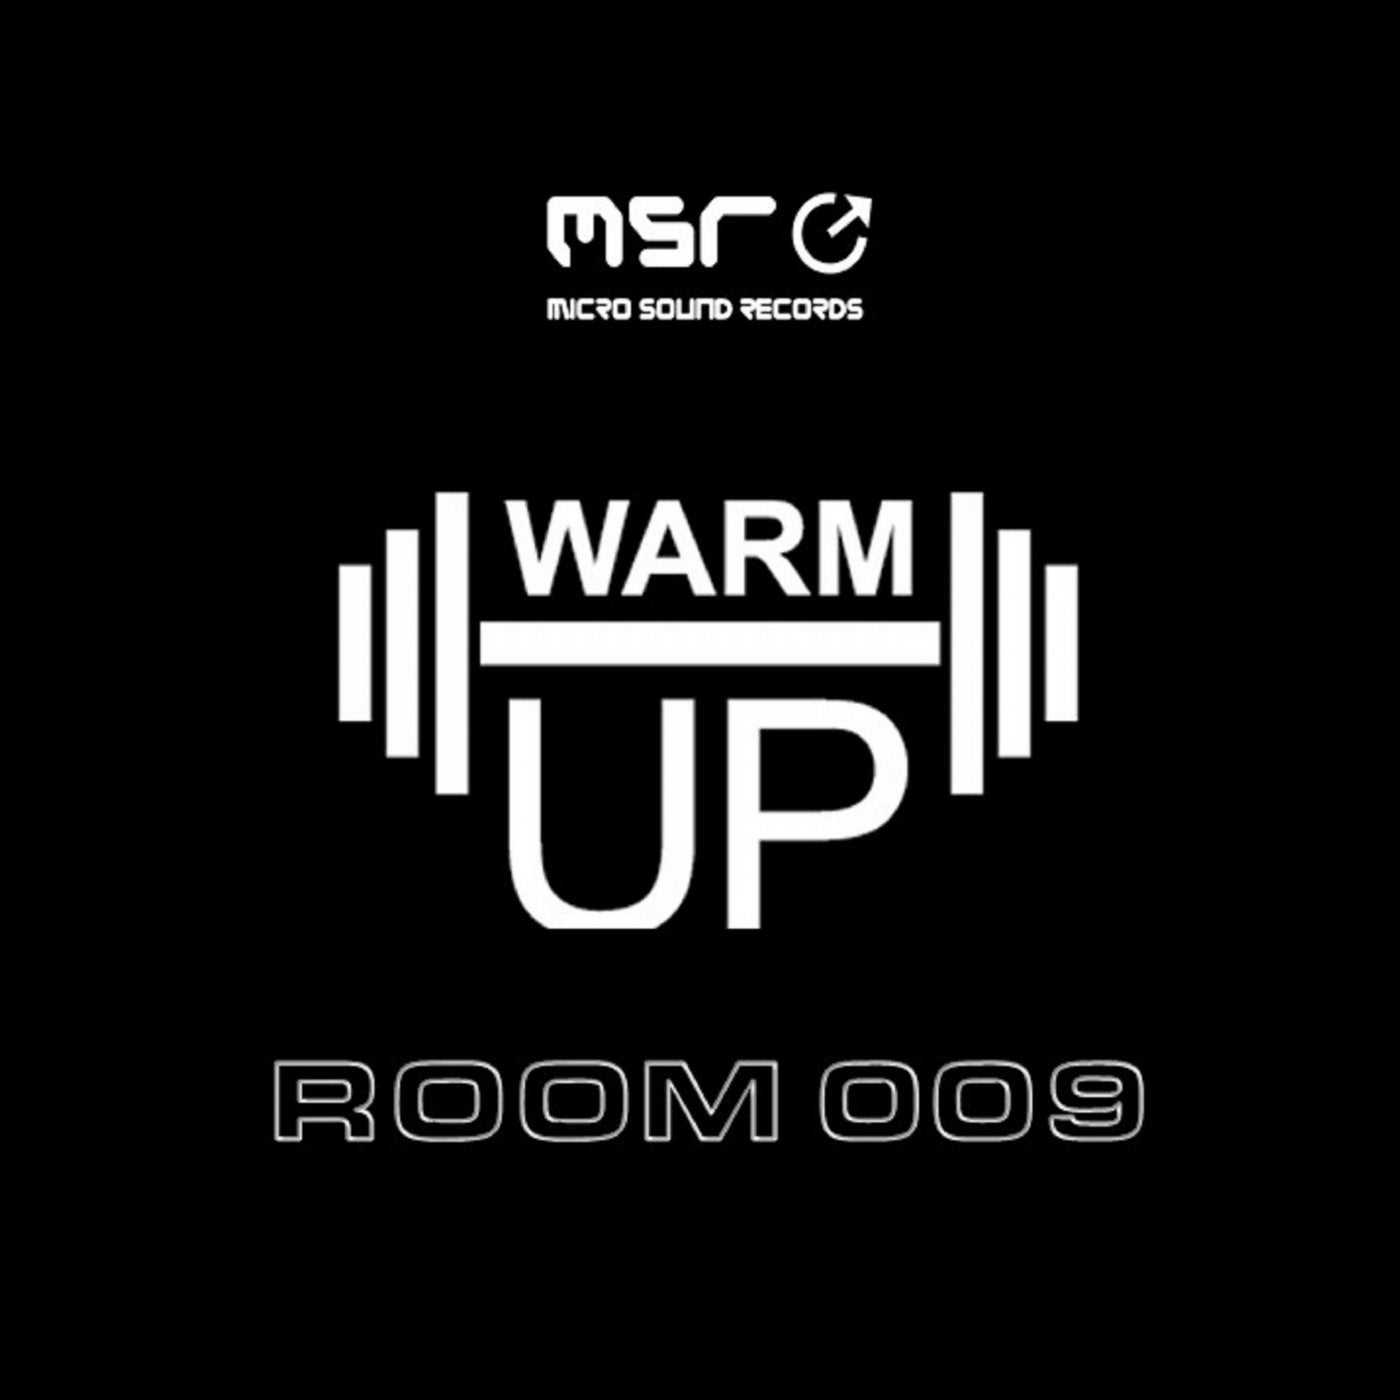 Room 009 (Warm Up)